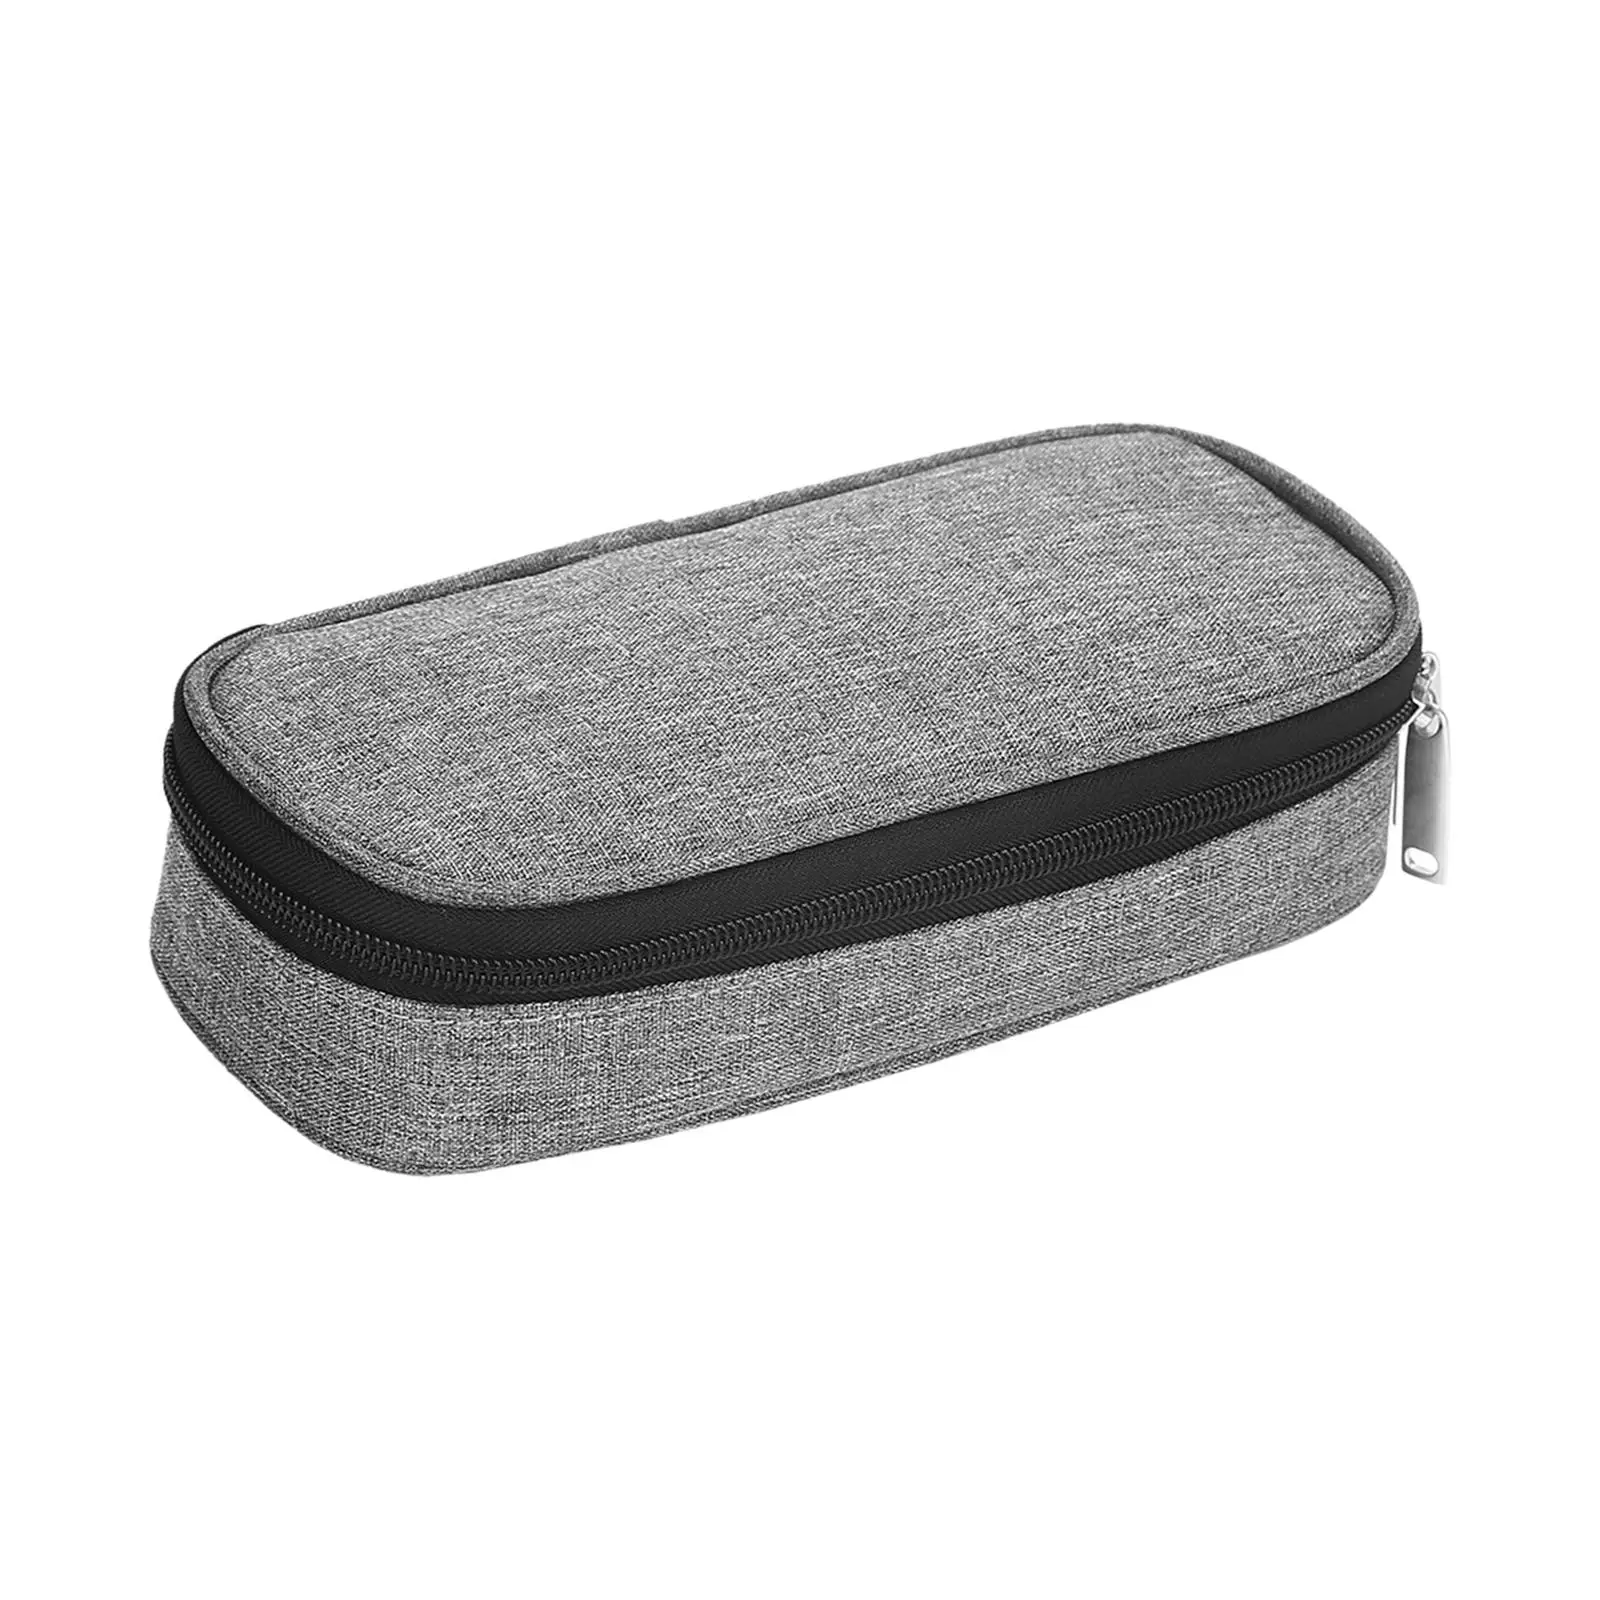 Medical Cooler Bag keep cool pocket Protective Insulation Storage Bag